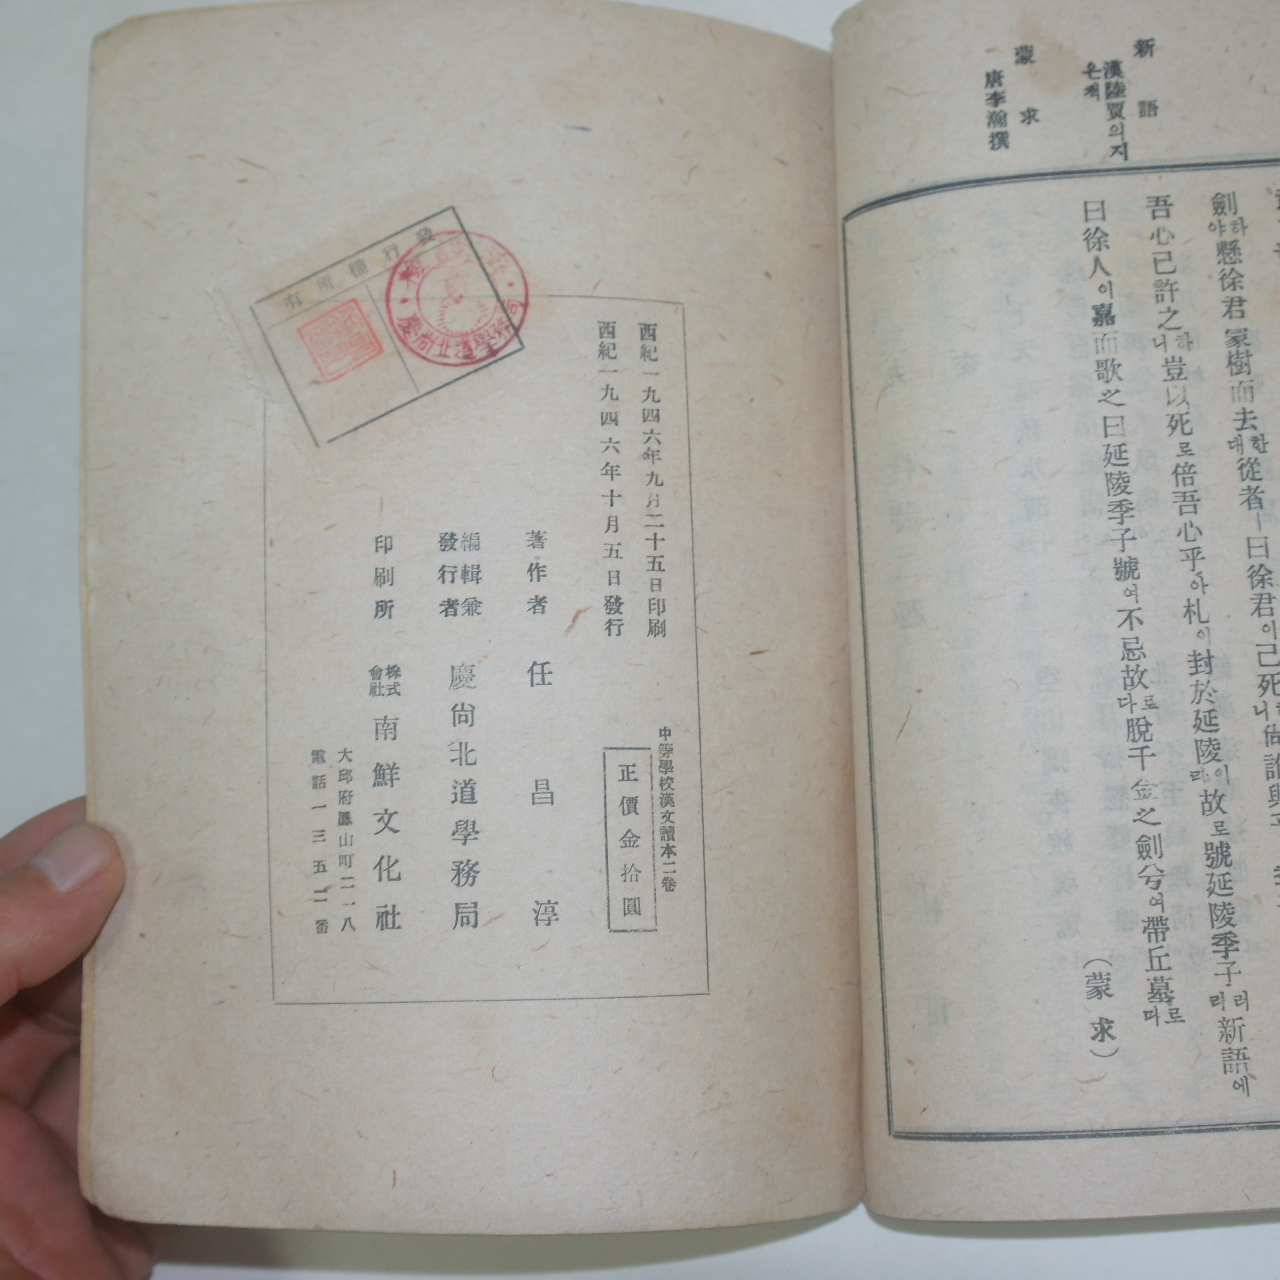 1946년 중등한문독본(中等漢文讀本) 권2